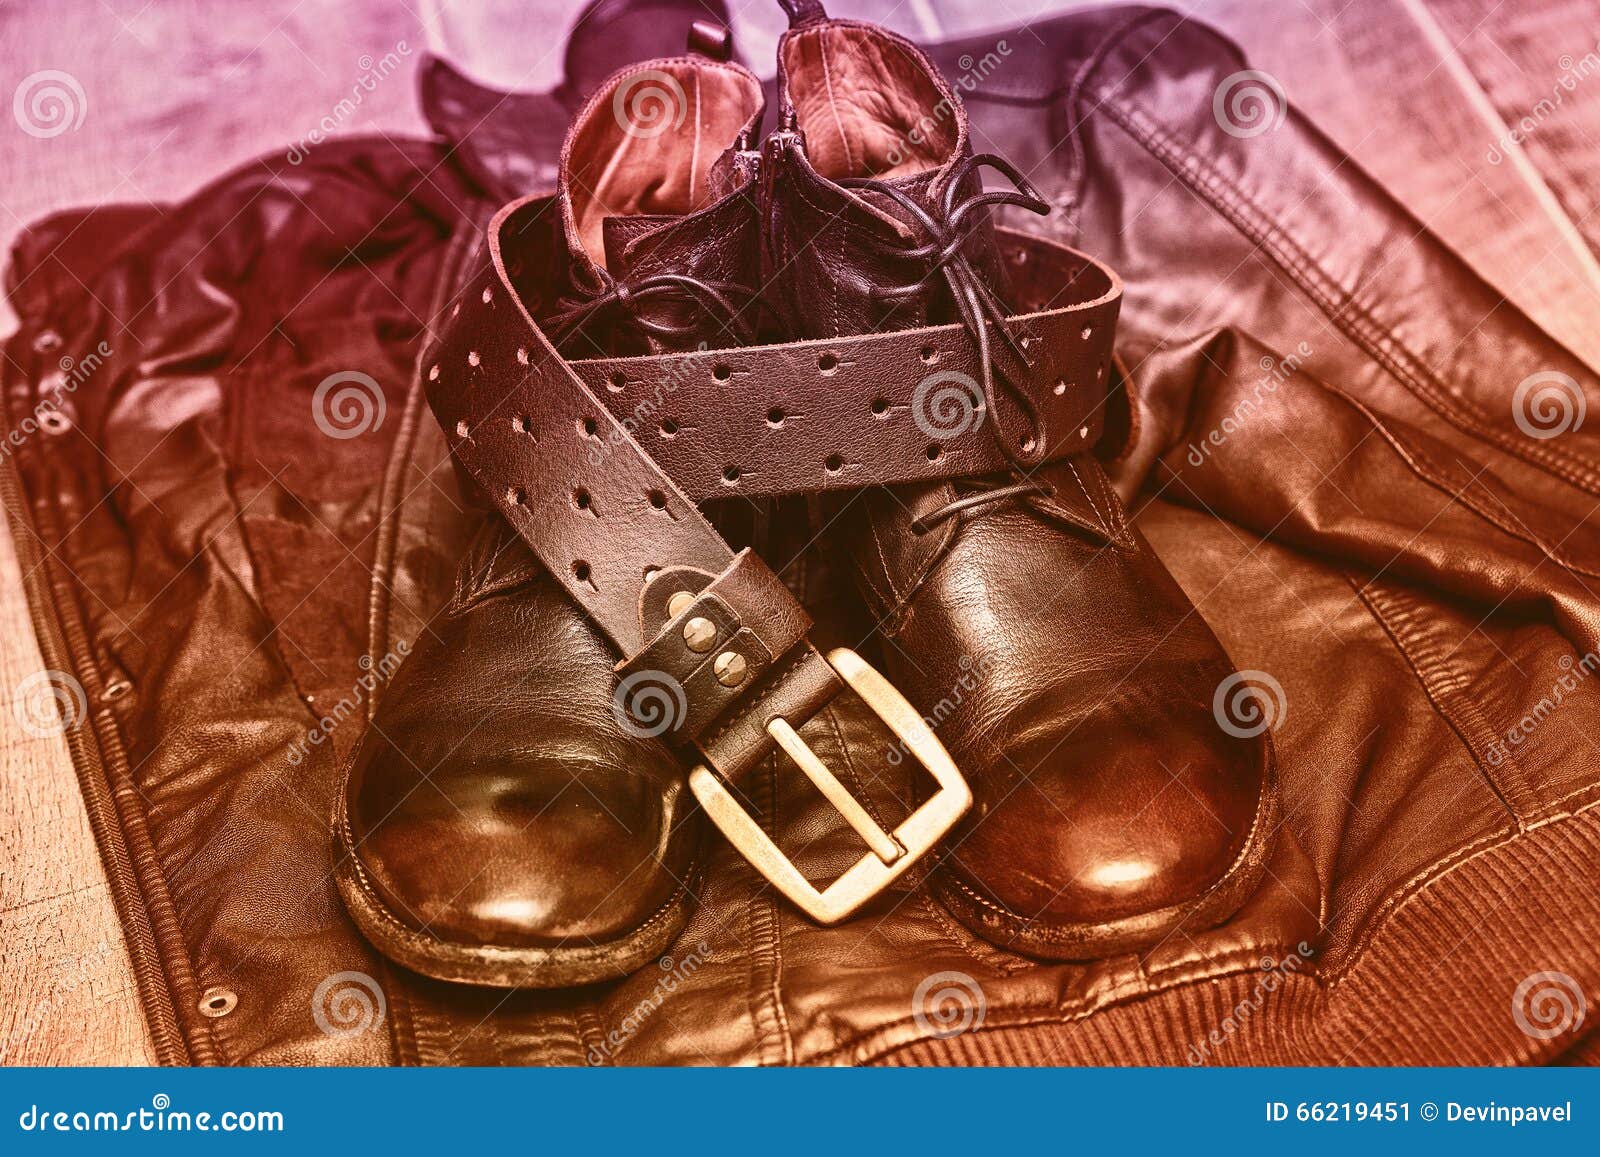 shoes, leather belt, leather jacket